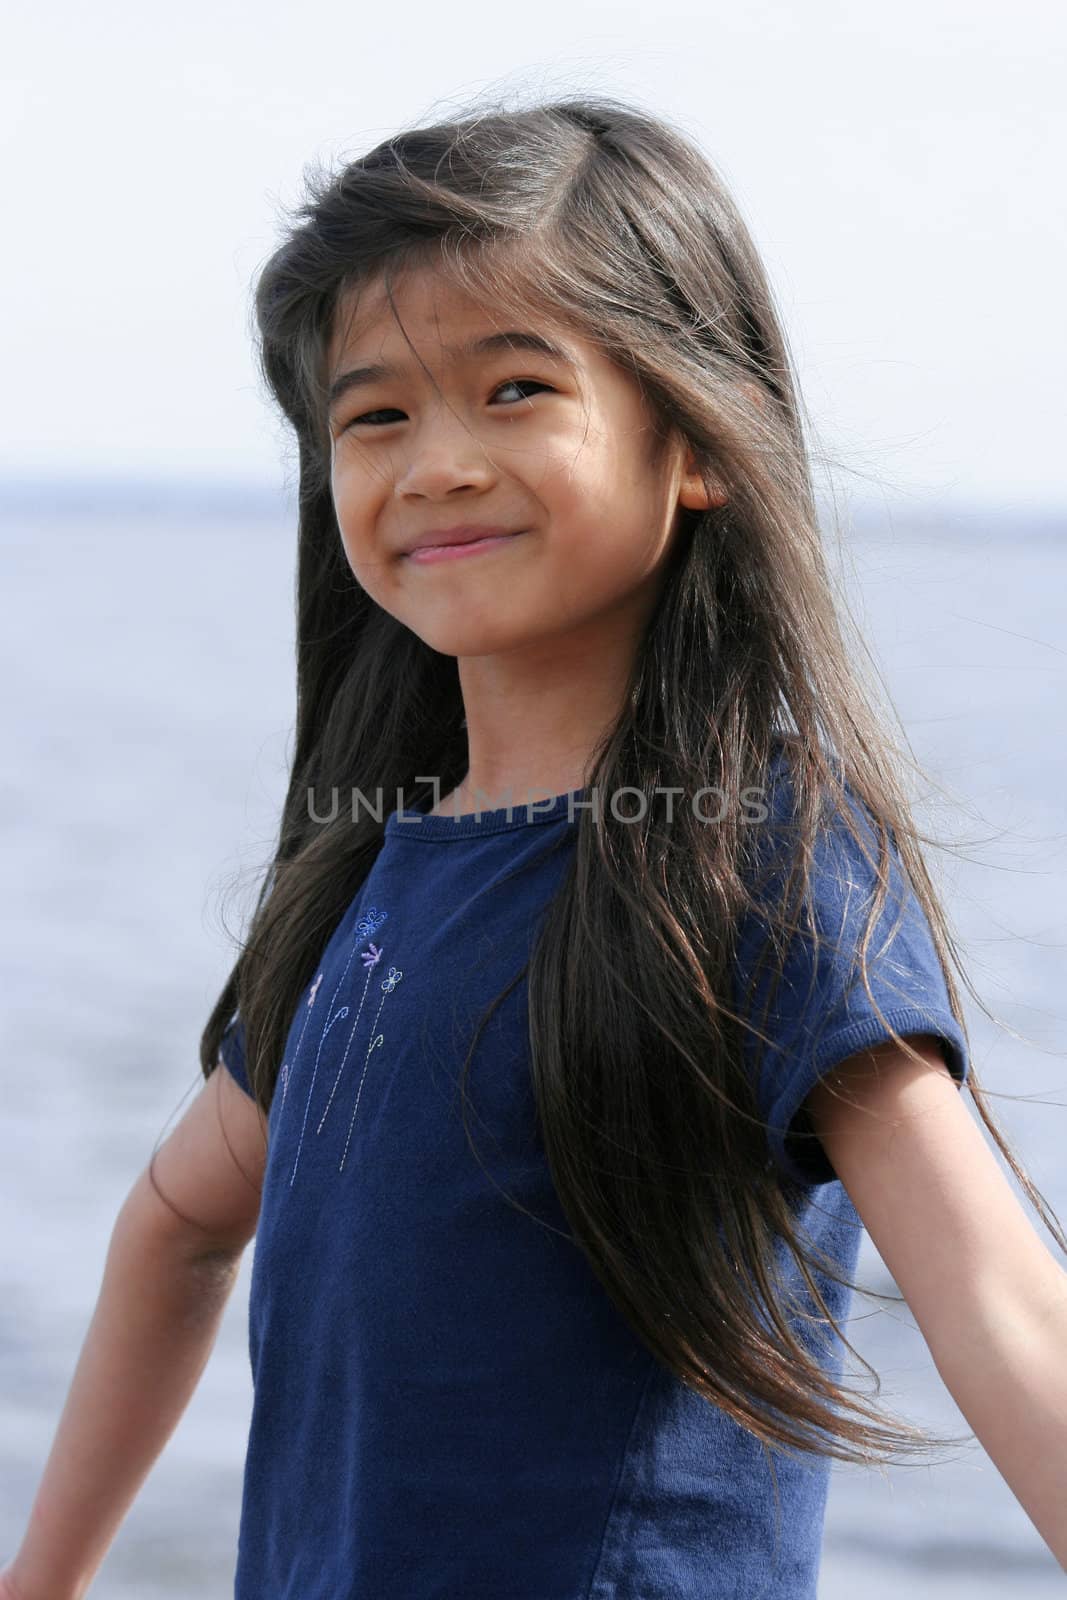 Little girl enjoying the lake shore